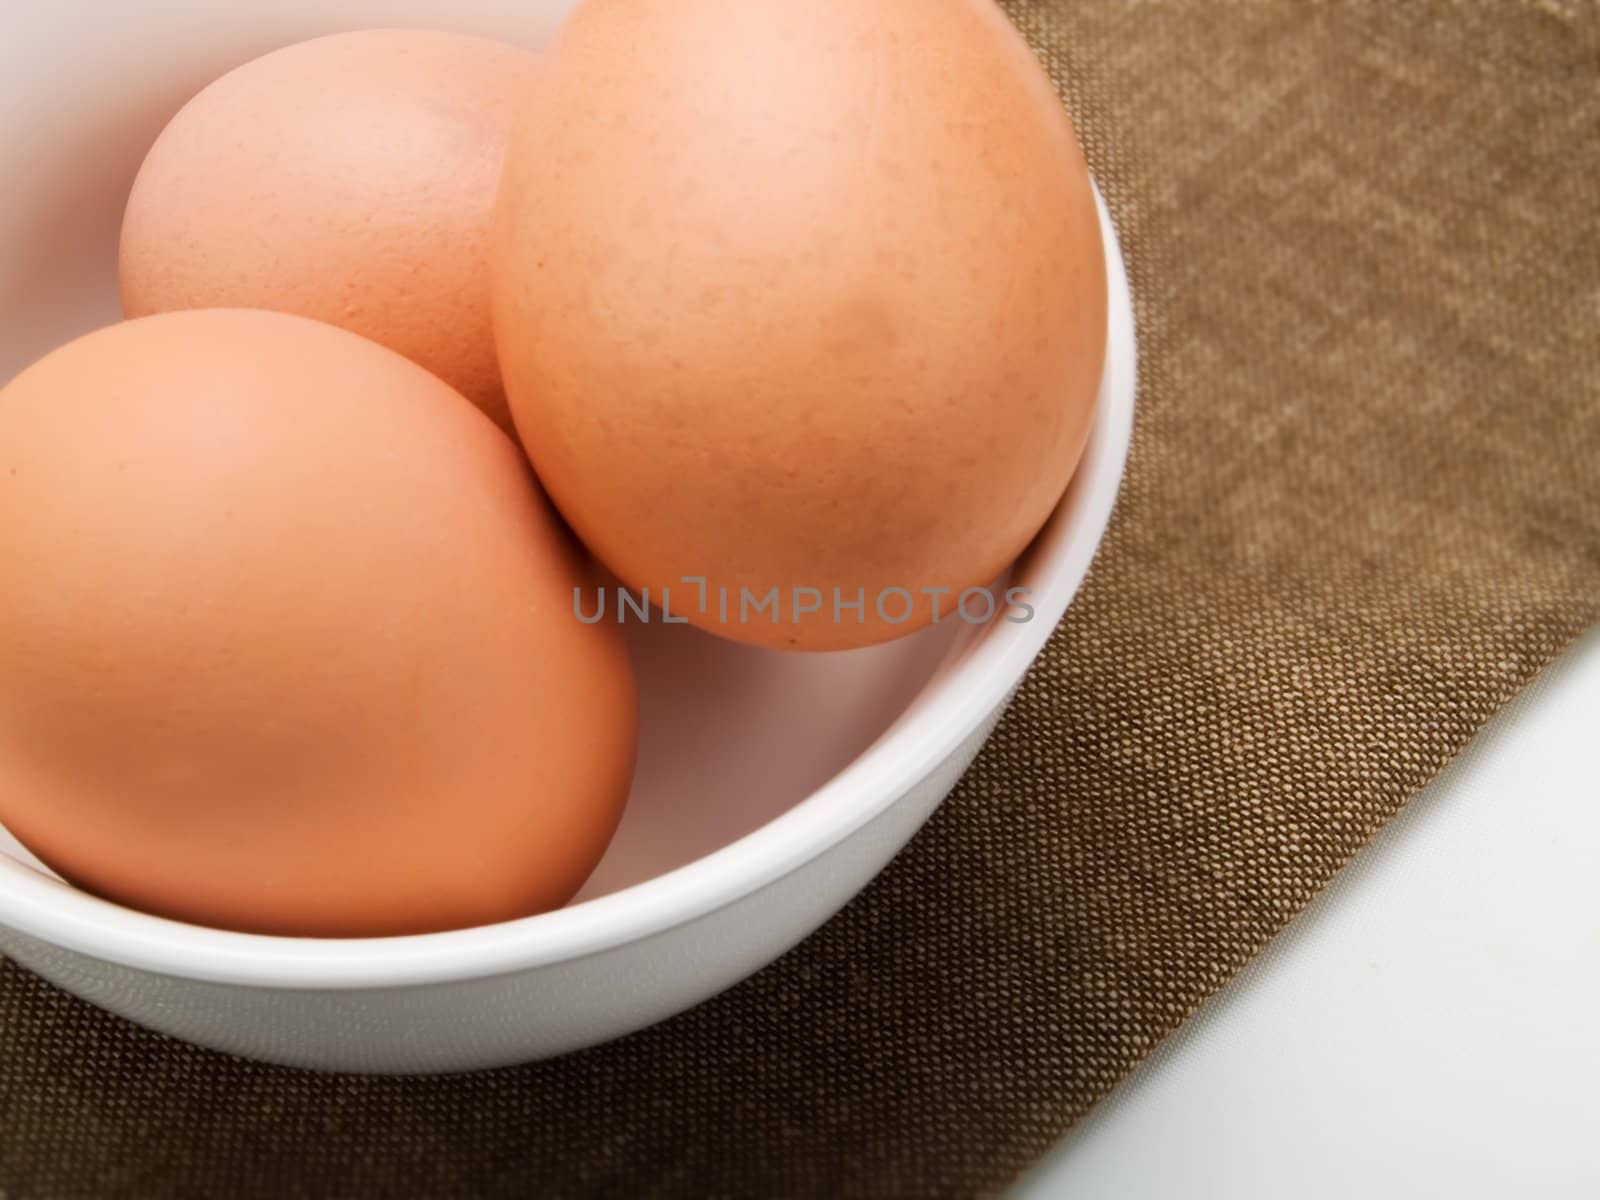 Eggs by henrischmit